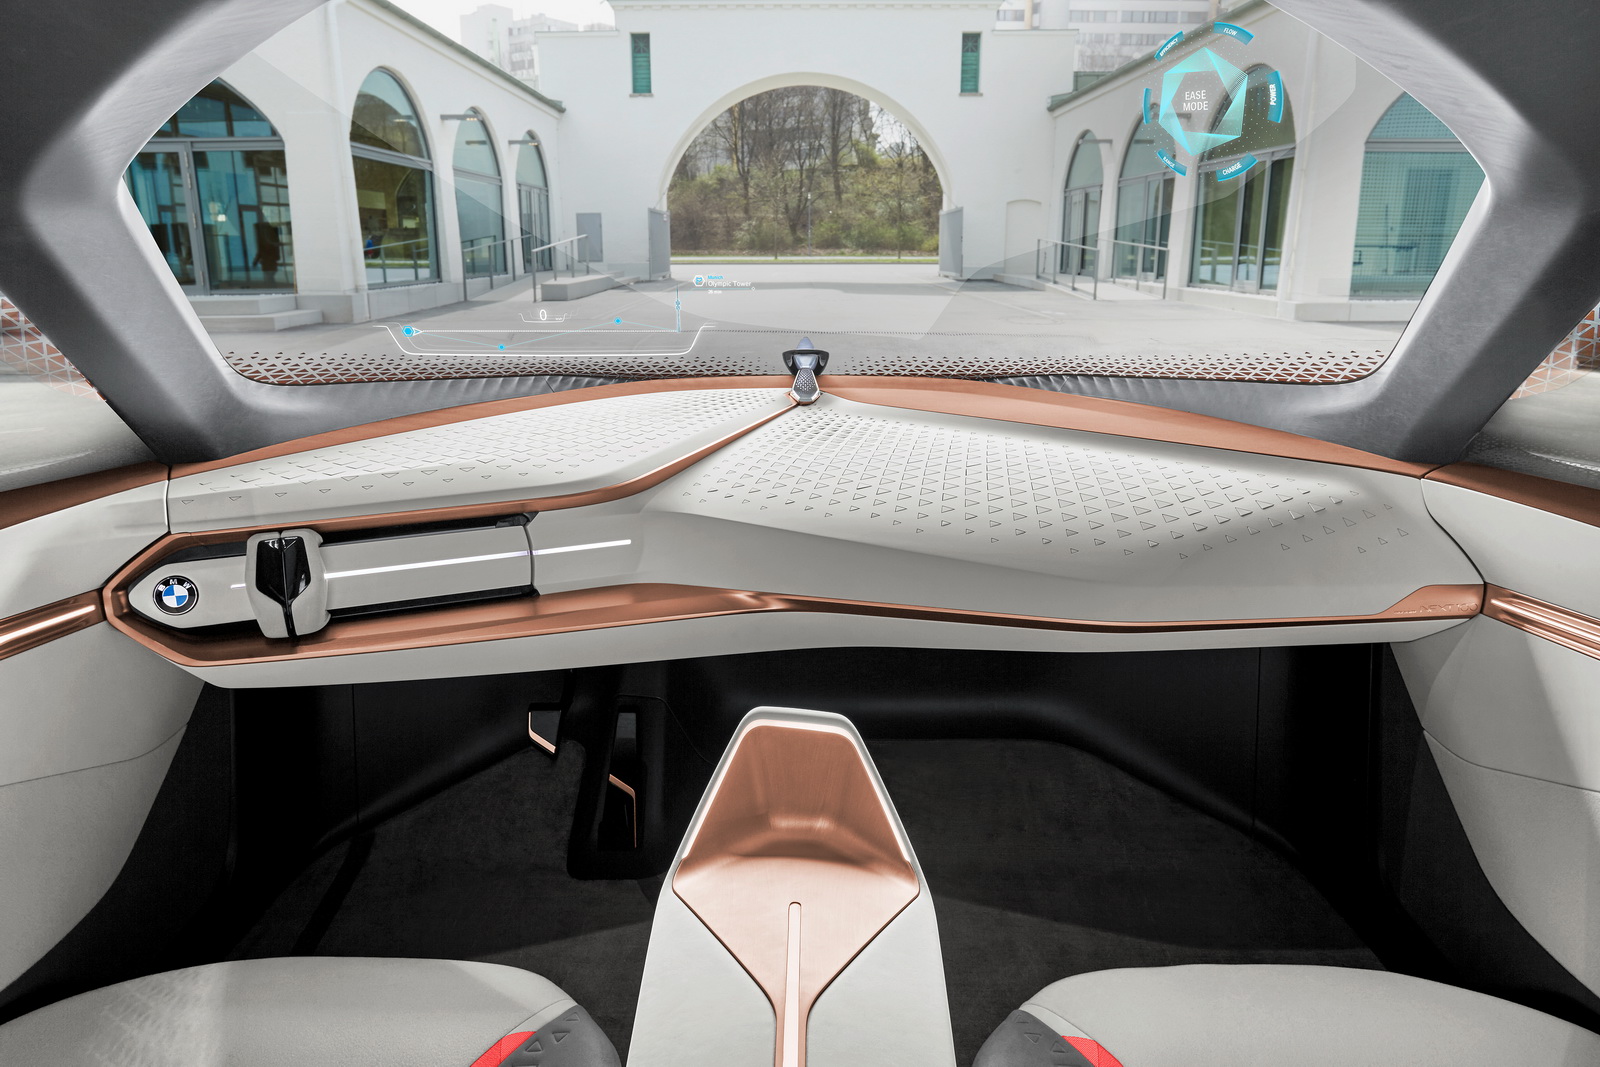 
Ngược lại, chế độ Ease giúp người lái nghỉ ngơi nhờ công nghệ tự động lái. Ở mỗi chế độ, khoang lái của BMW Vision Next 100 sẽ thay đổi theo sao cho phù hợp.
